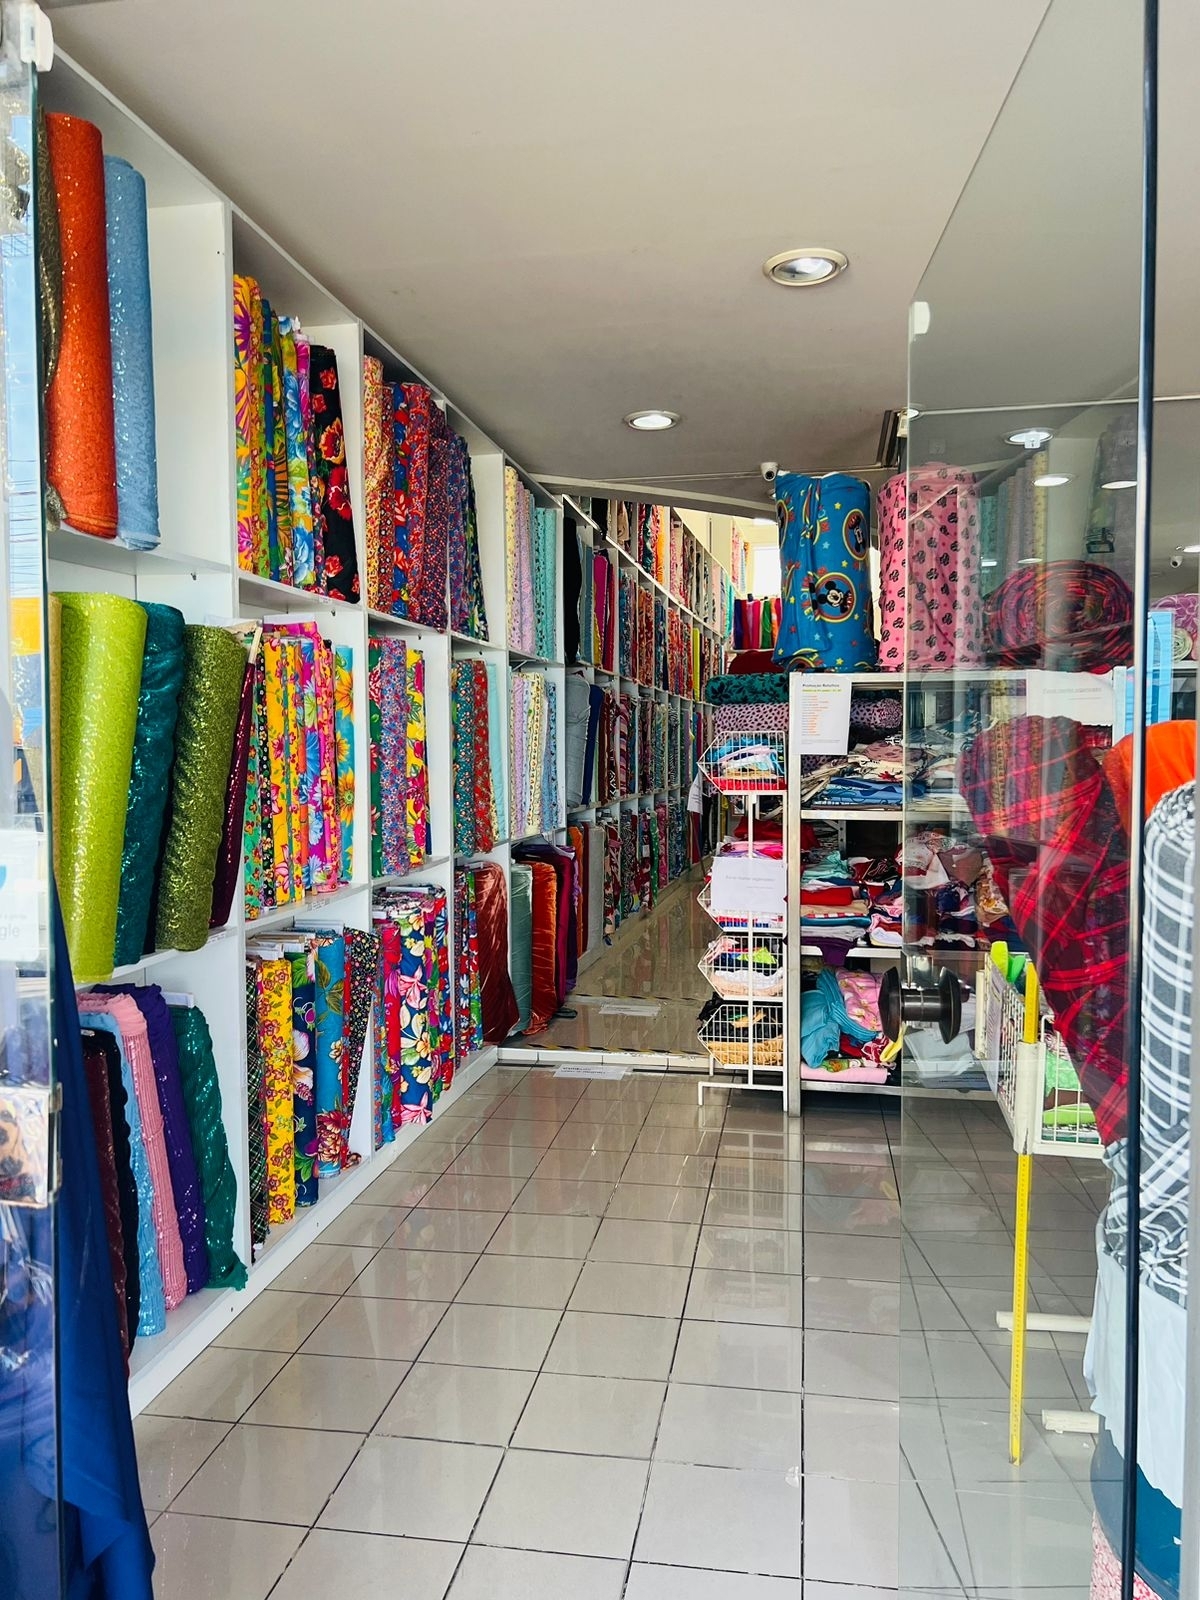 Vendo loja de tecido completa com faturamento bruto total de R$ 400.000,00 